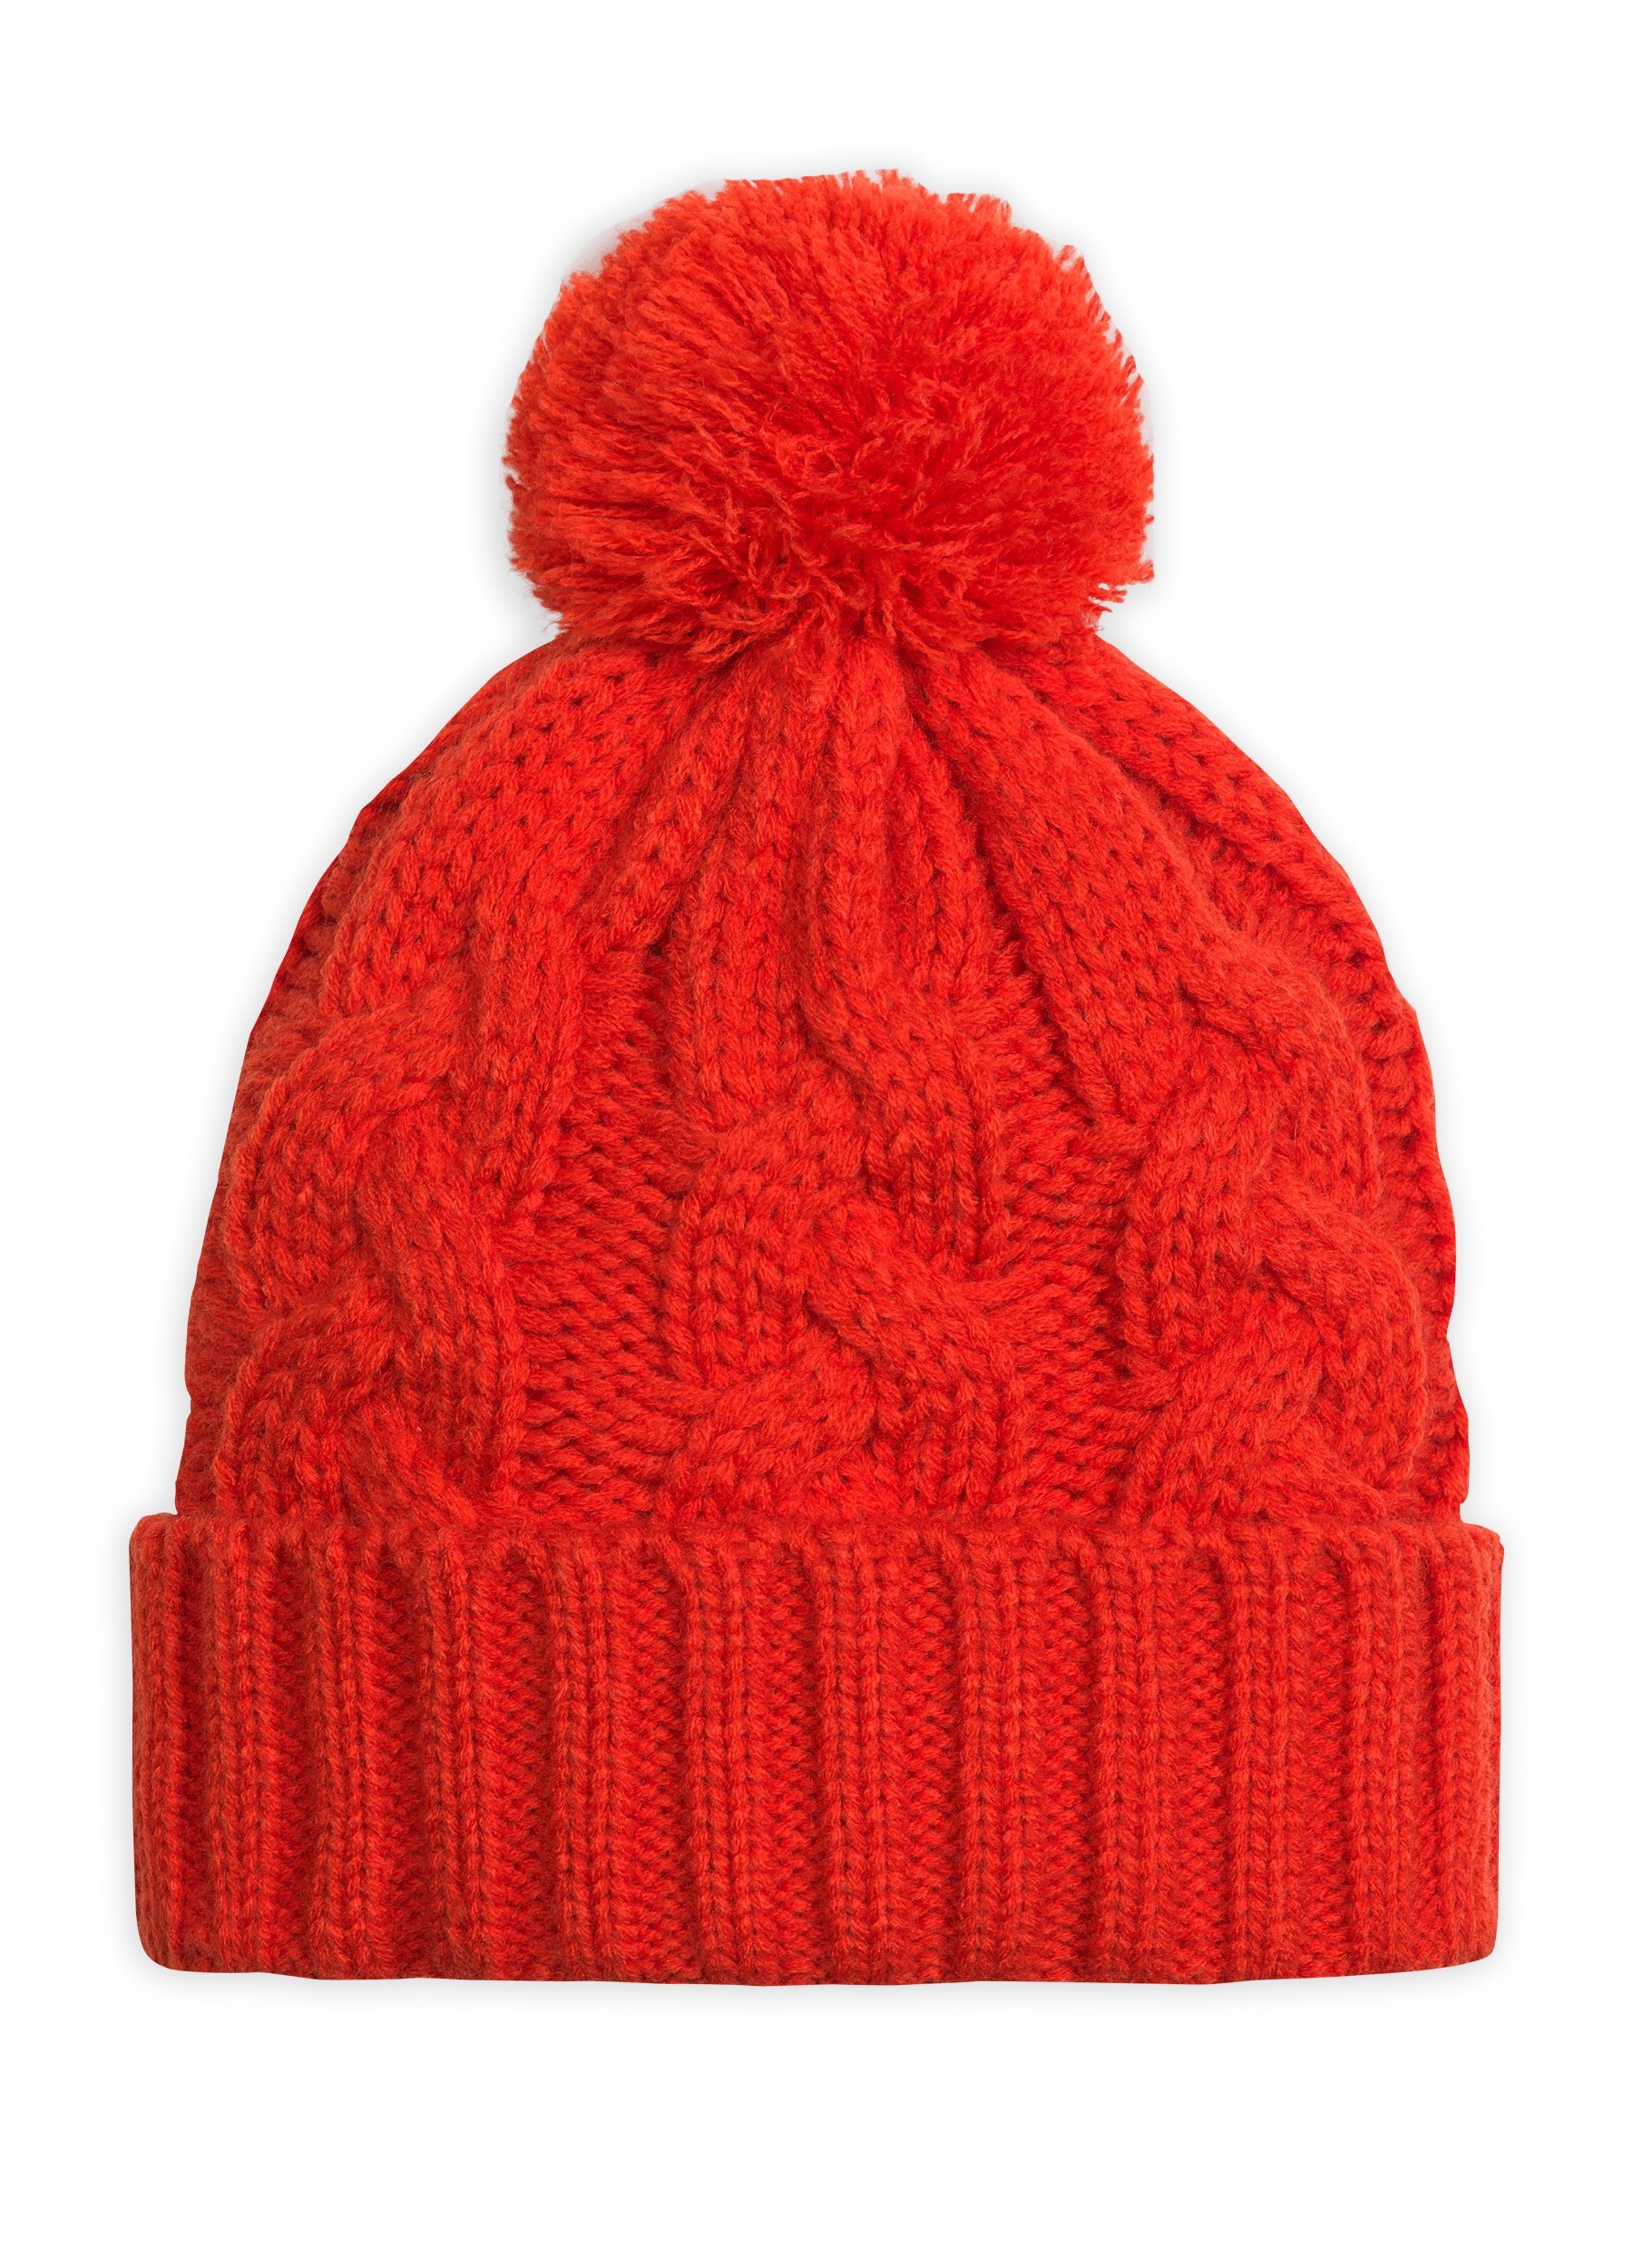 Картинка шапка. Gkq4029 шапка для девочек.. Pelican шапка красная для девочек. Красная шапка с помпоном. Красная вязаная шапка.